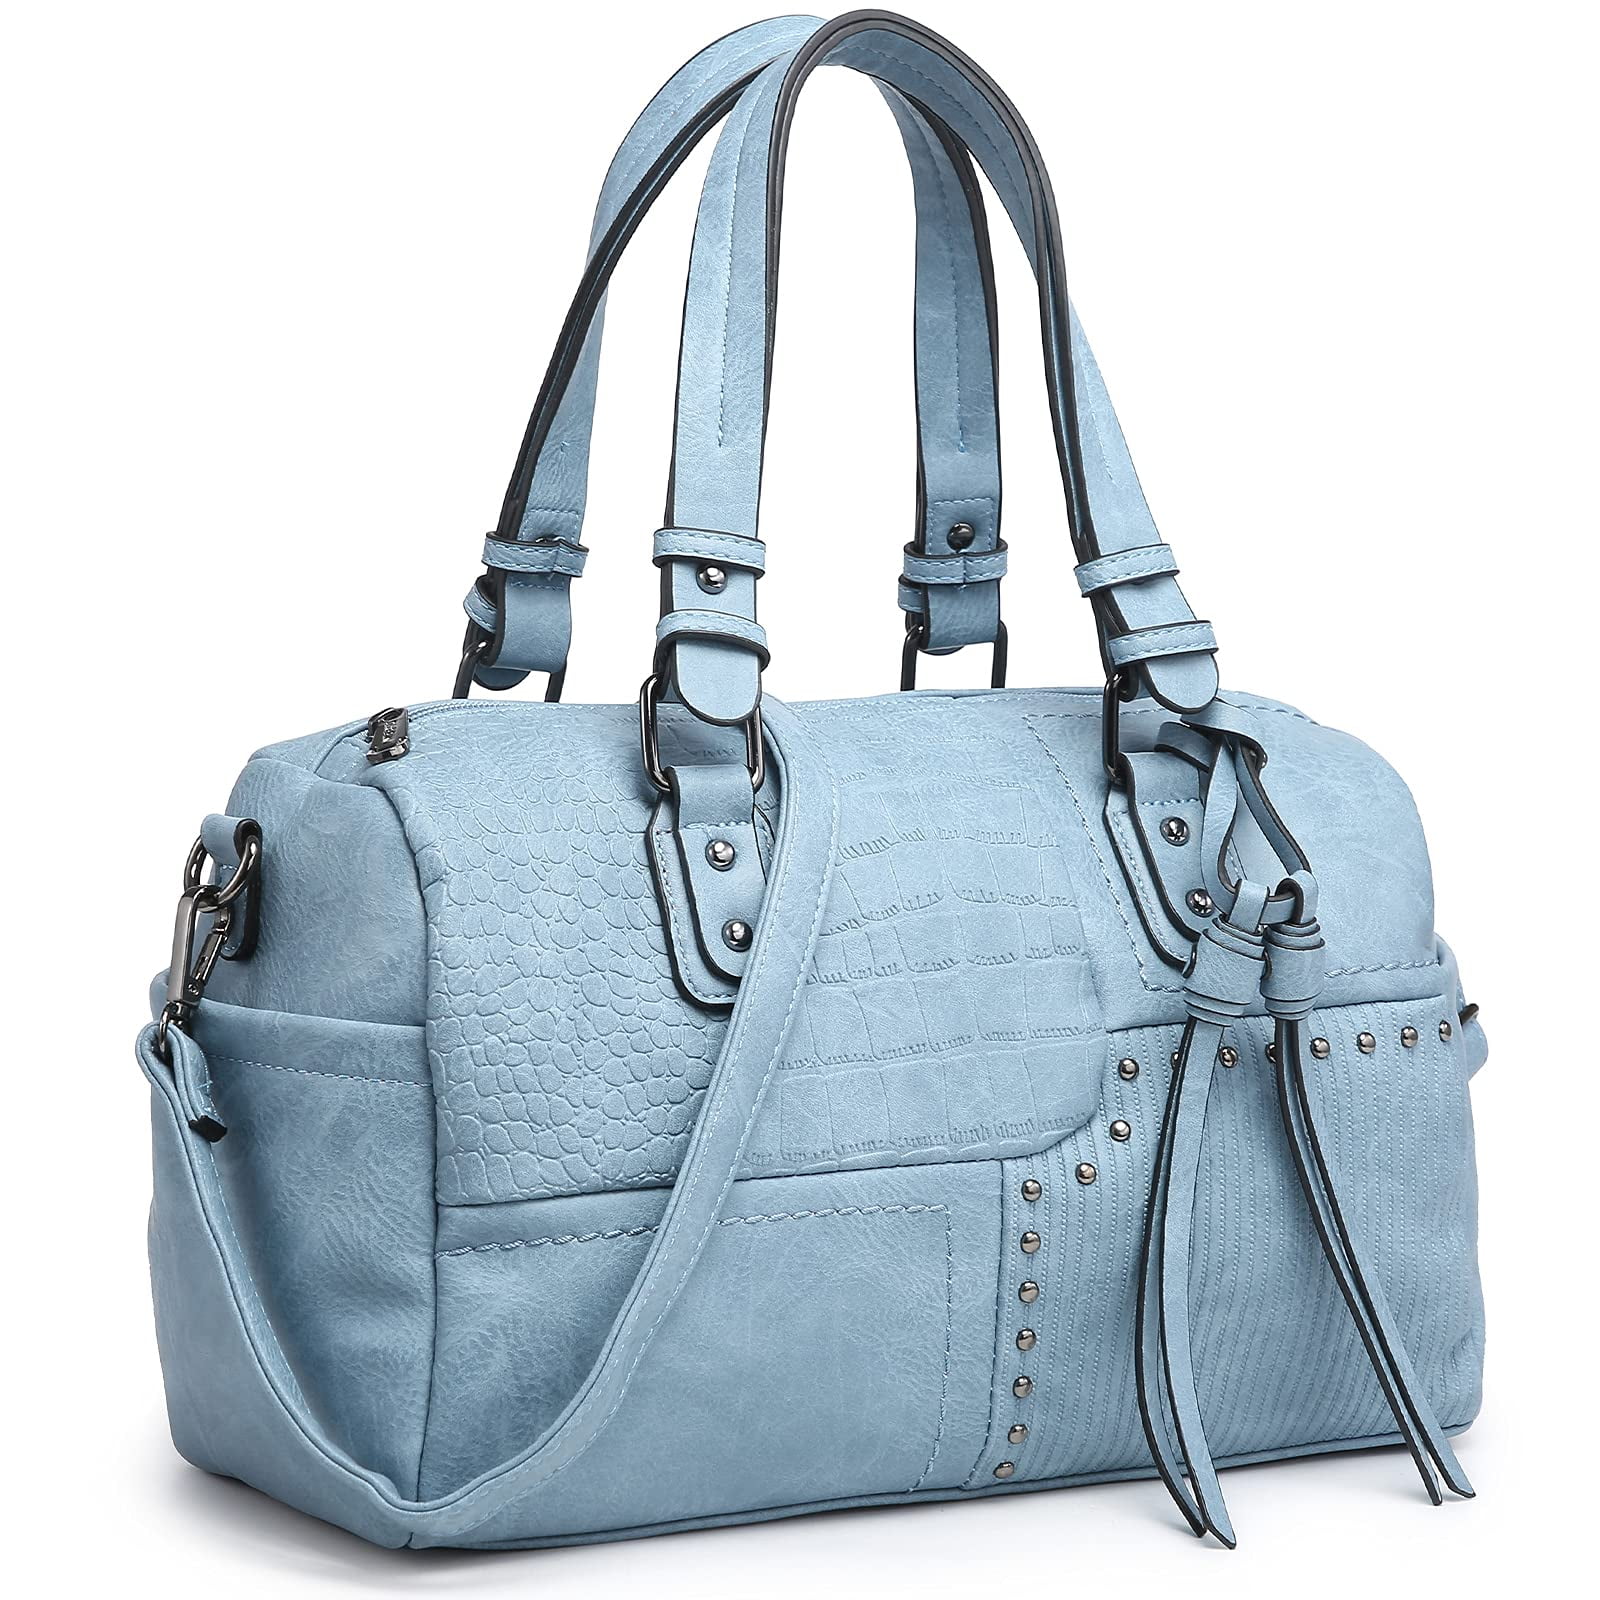 Women Sequins Large Leather Handbag Shoulder Bag Lady Design Purse Satchel Gift